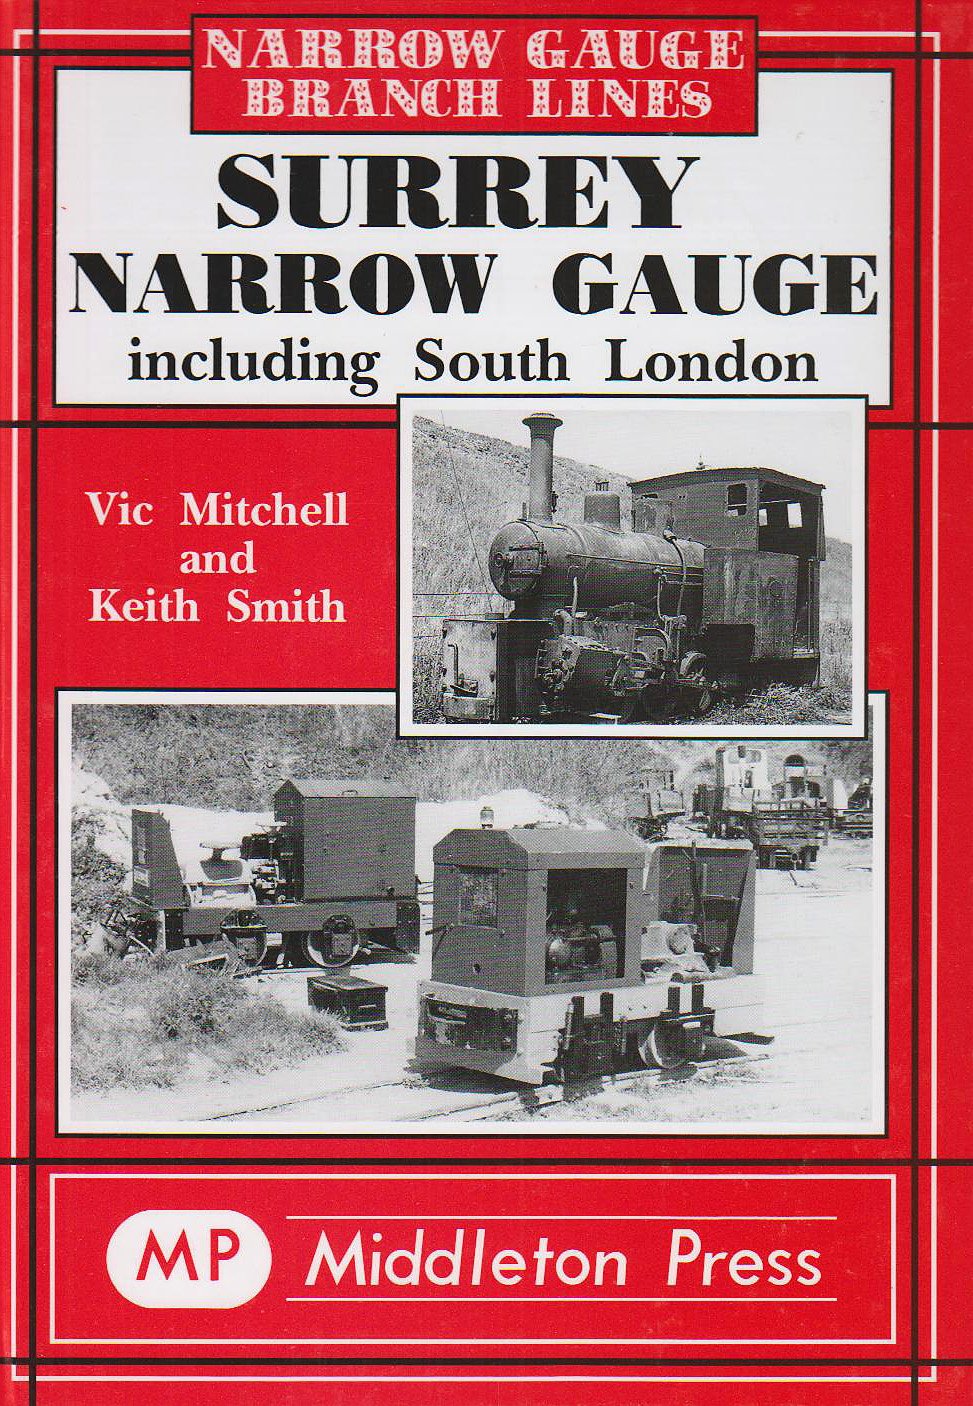 Narrow Gauge Surrey Narrow Gauge including South London